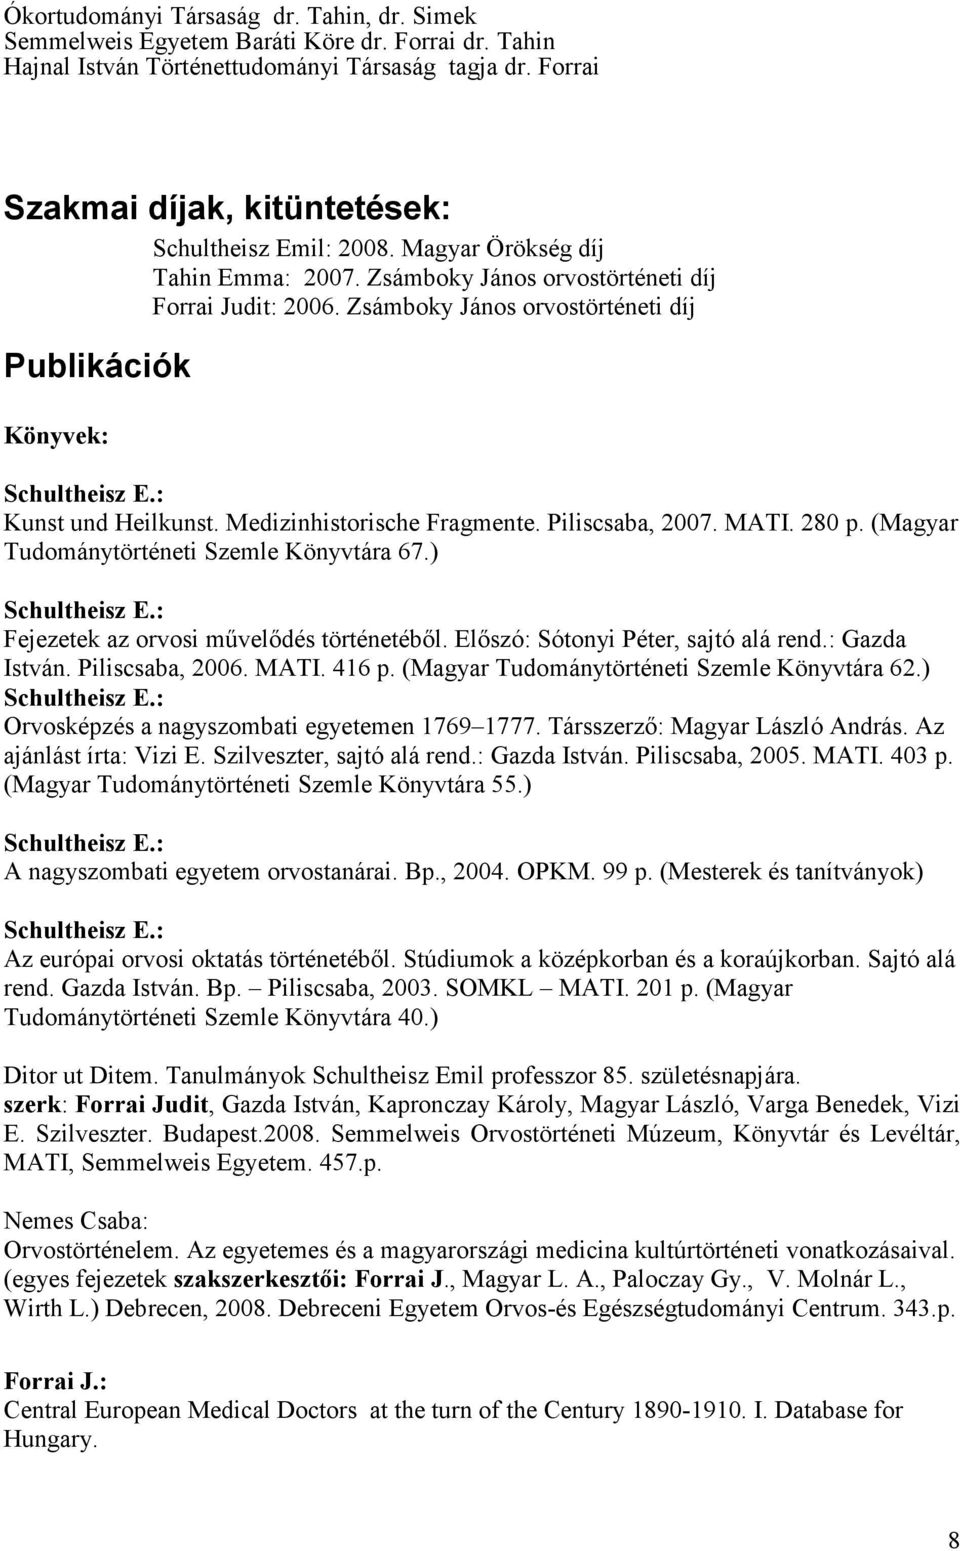 Zsámboky János orvostörténeti díj Publikációk Könyvek: Kunst und Heilkunst. Medizinhistorische Fragmente. Piliscsaba, 2007. MATI. 280 p. (Magyar Tudománytörténeti Szemle Könyvtára 67.